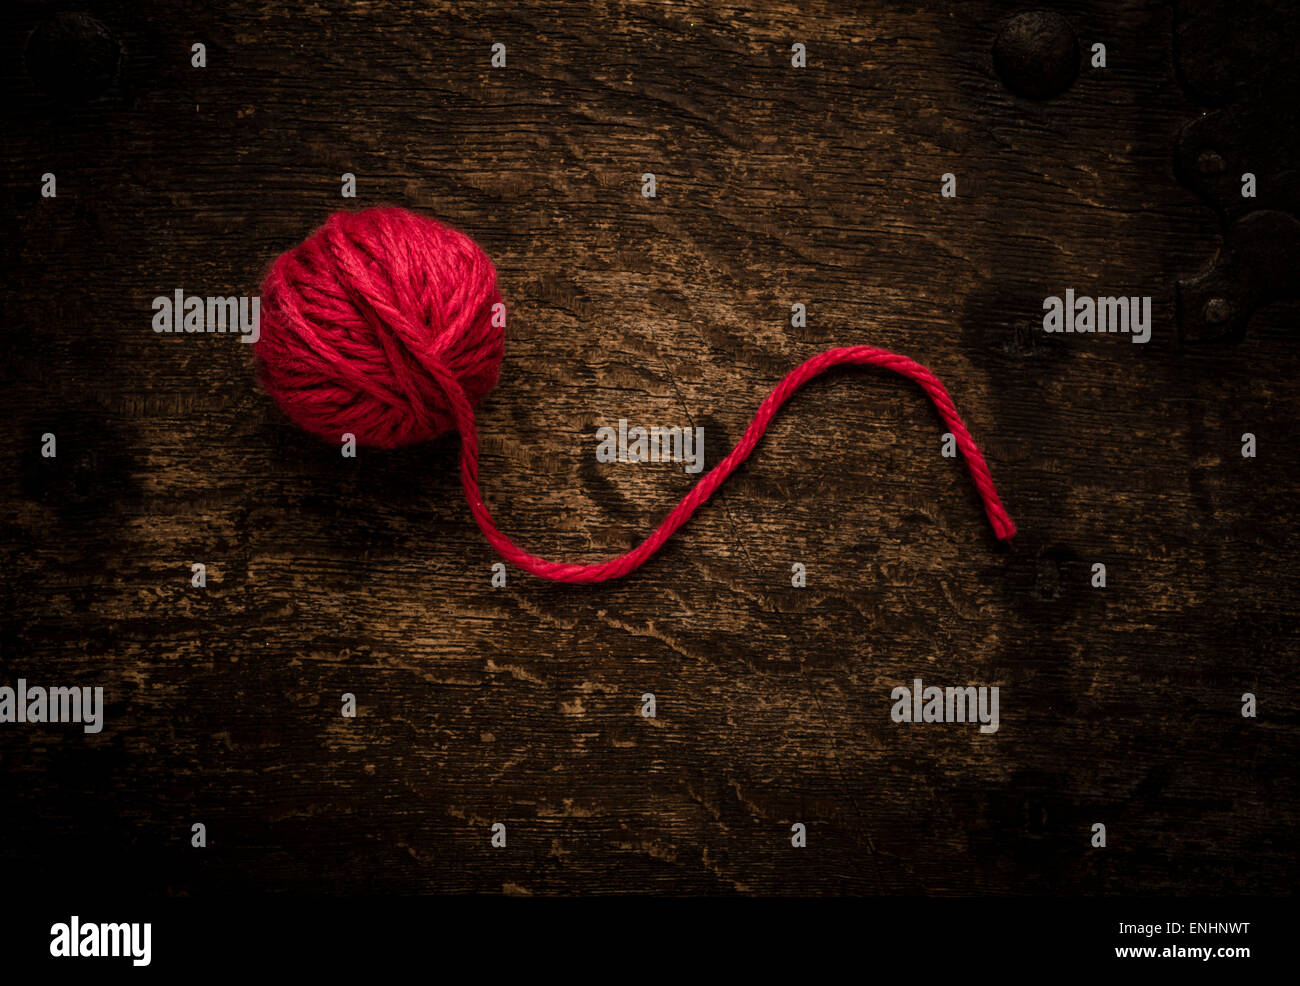 Stillleben mit roten Wollknäuel auf Holztisch. Konzeptbild von stricken oder häkeln. Stockfoto